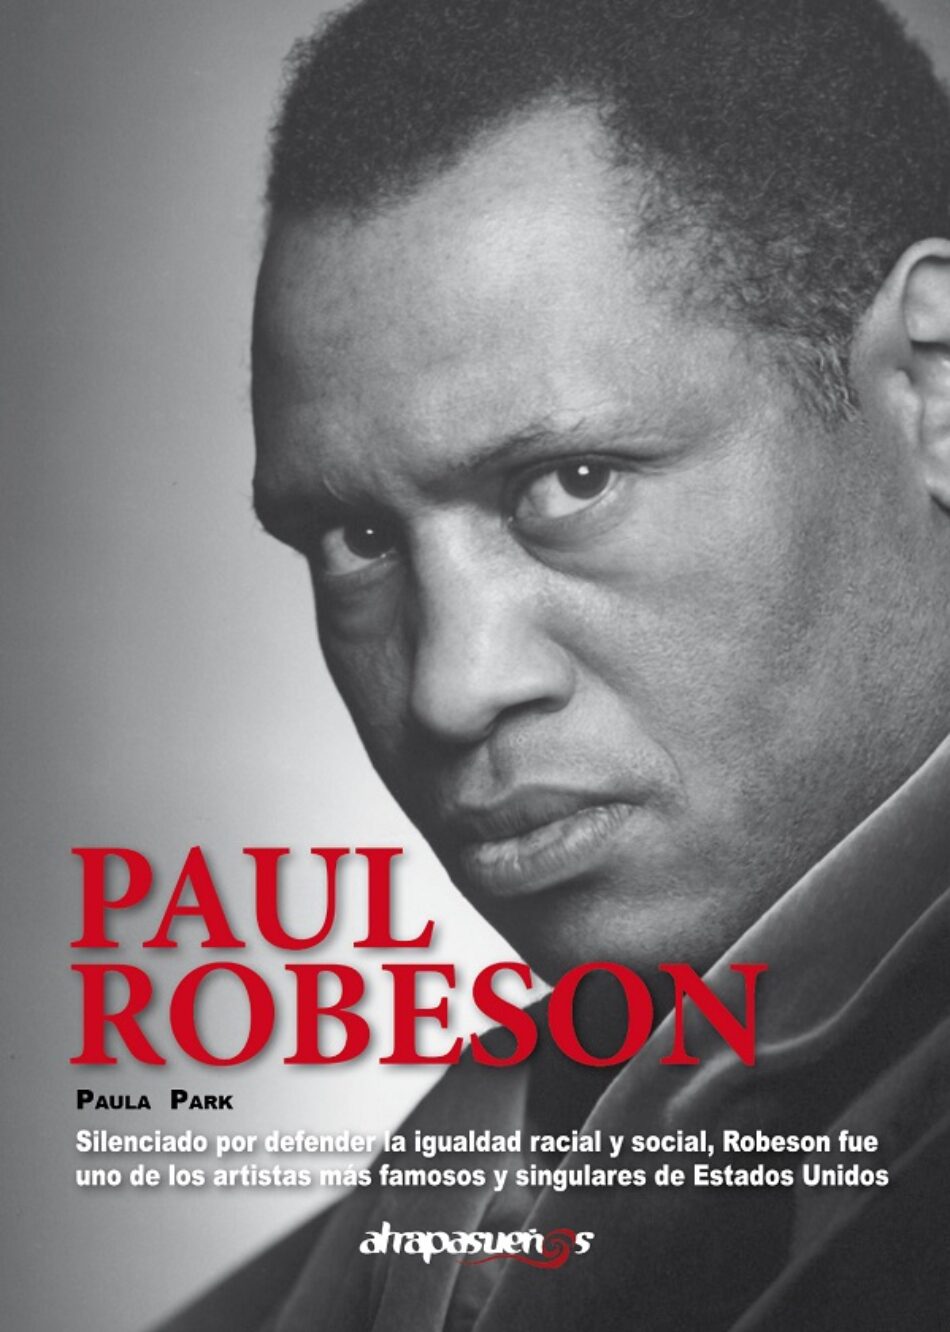 Se publica por vez primera en español una biografía del actor, músico y activista Paul Robeson